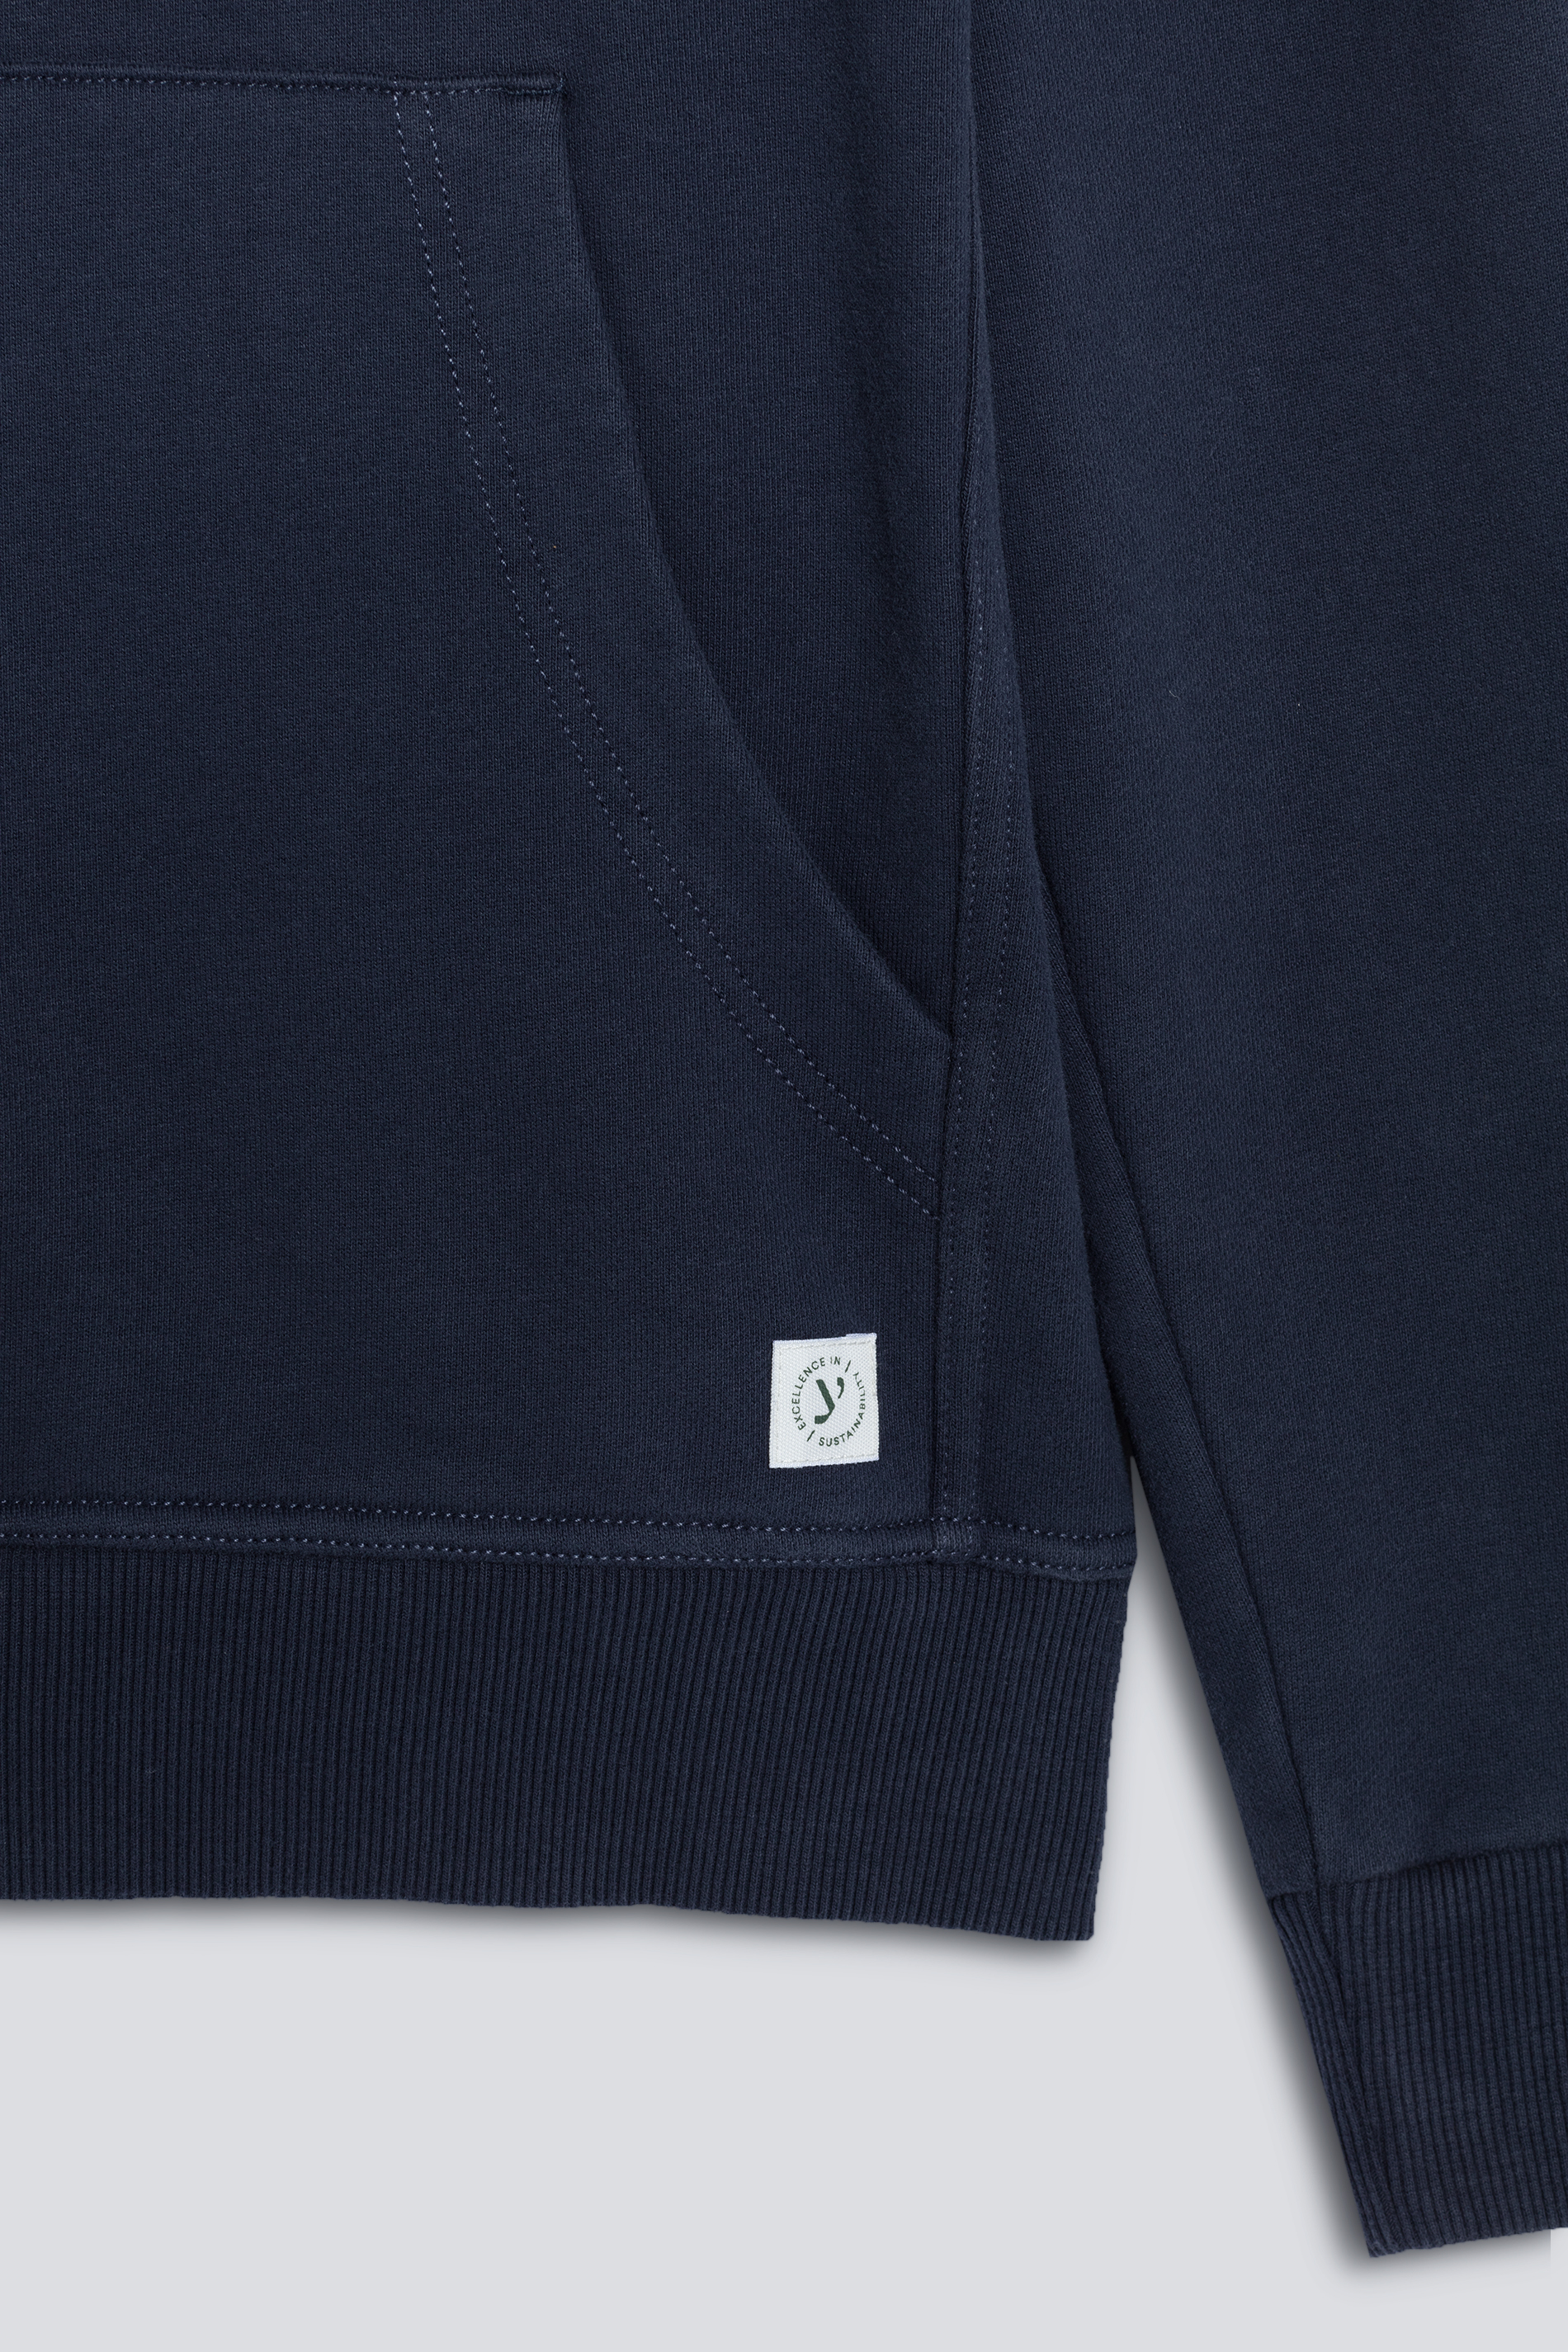 Hoodie-Sweatshirt Blue Nights Serie Soft Felpa Detailansicht 01 | mey®